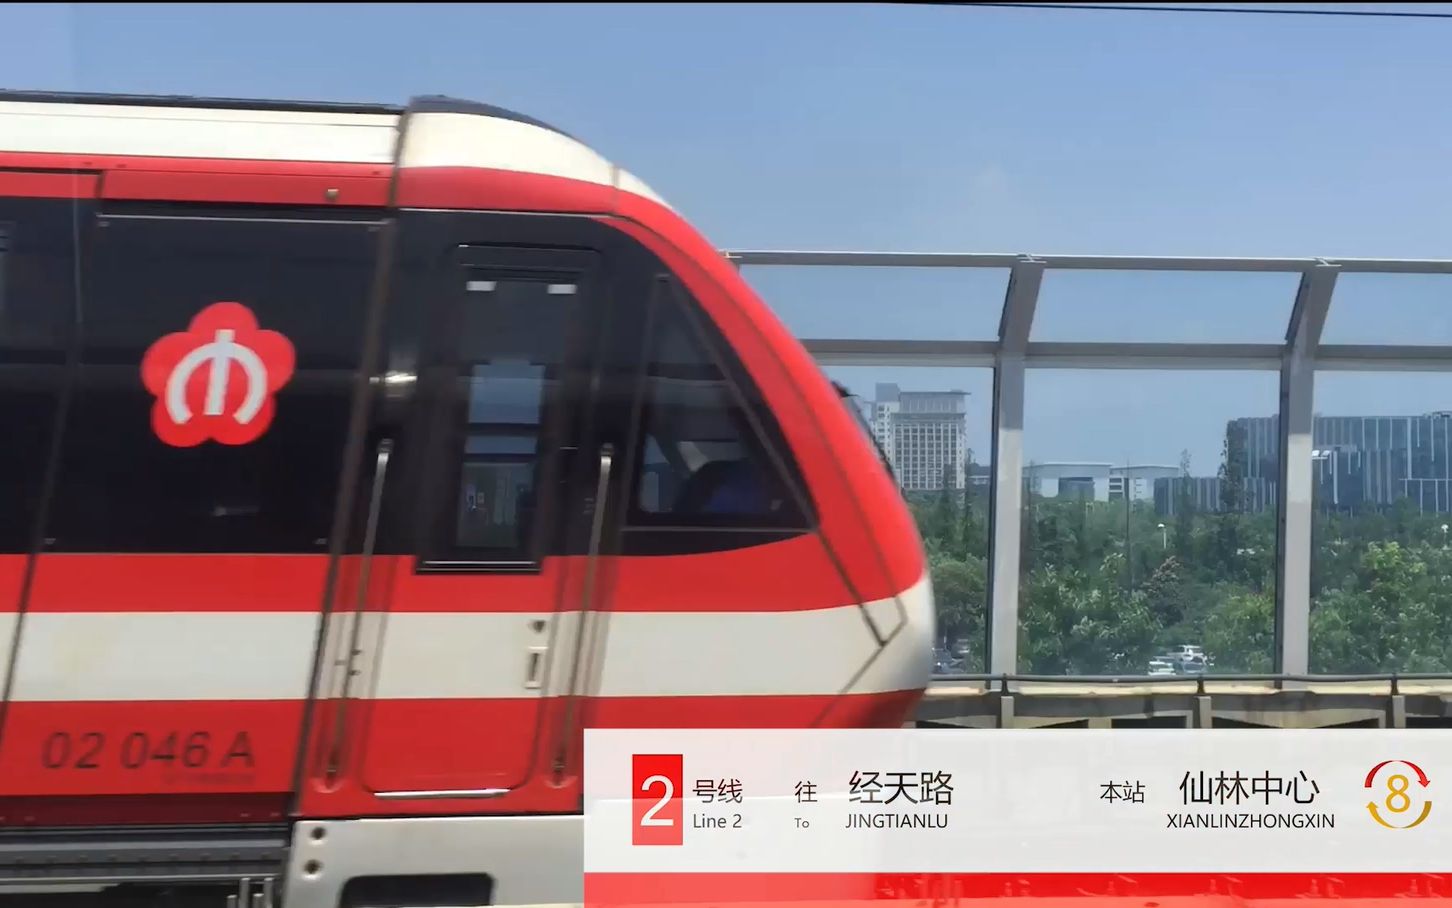 【南京地铁】南京地铁2号线左侧pov(钟灵街—经天路)配2030年报站